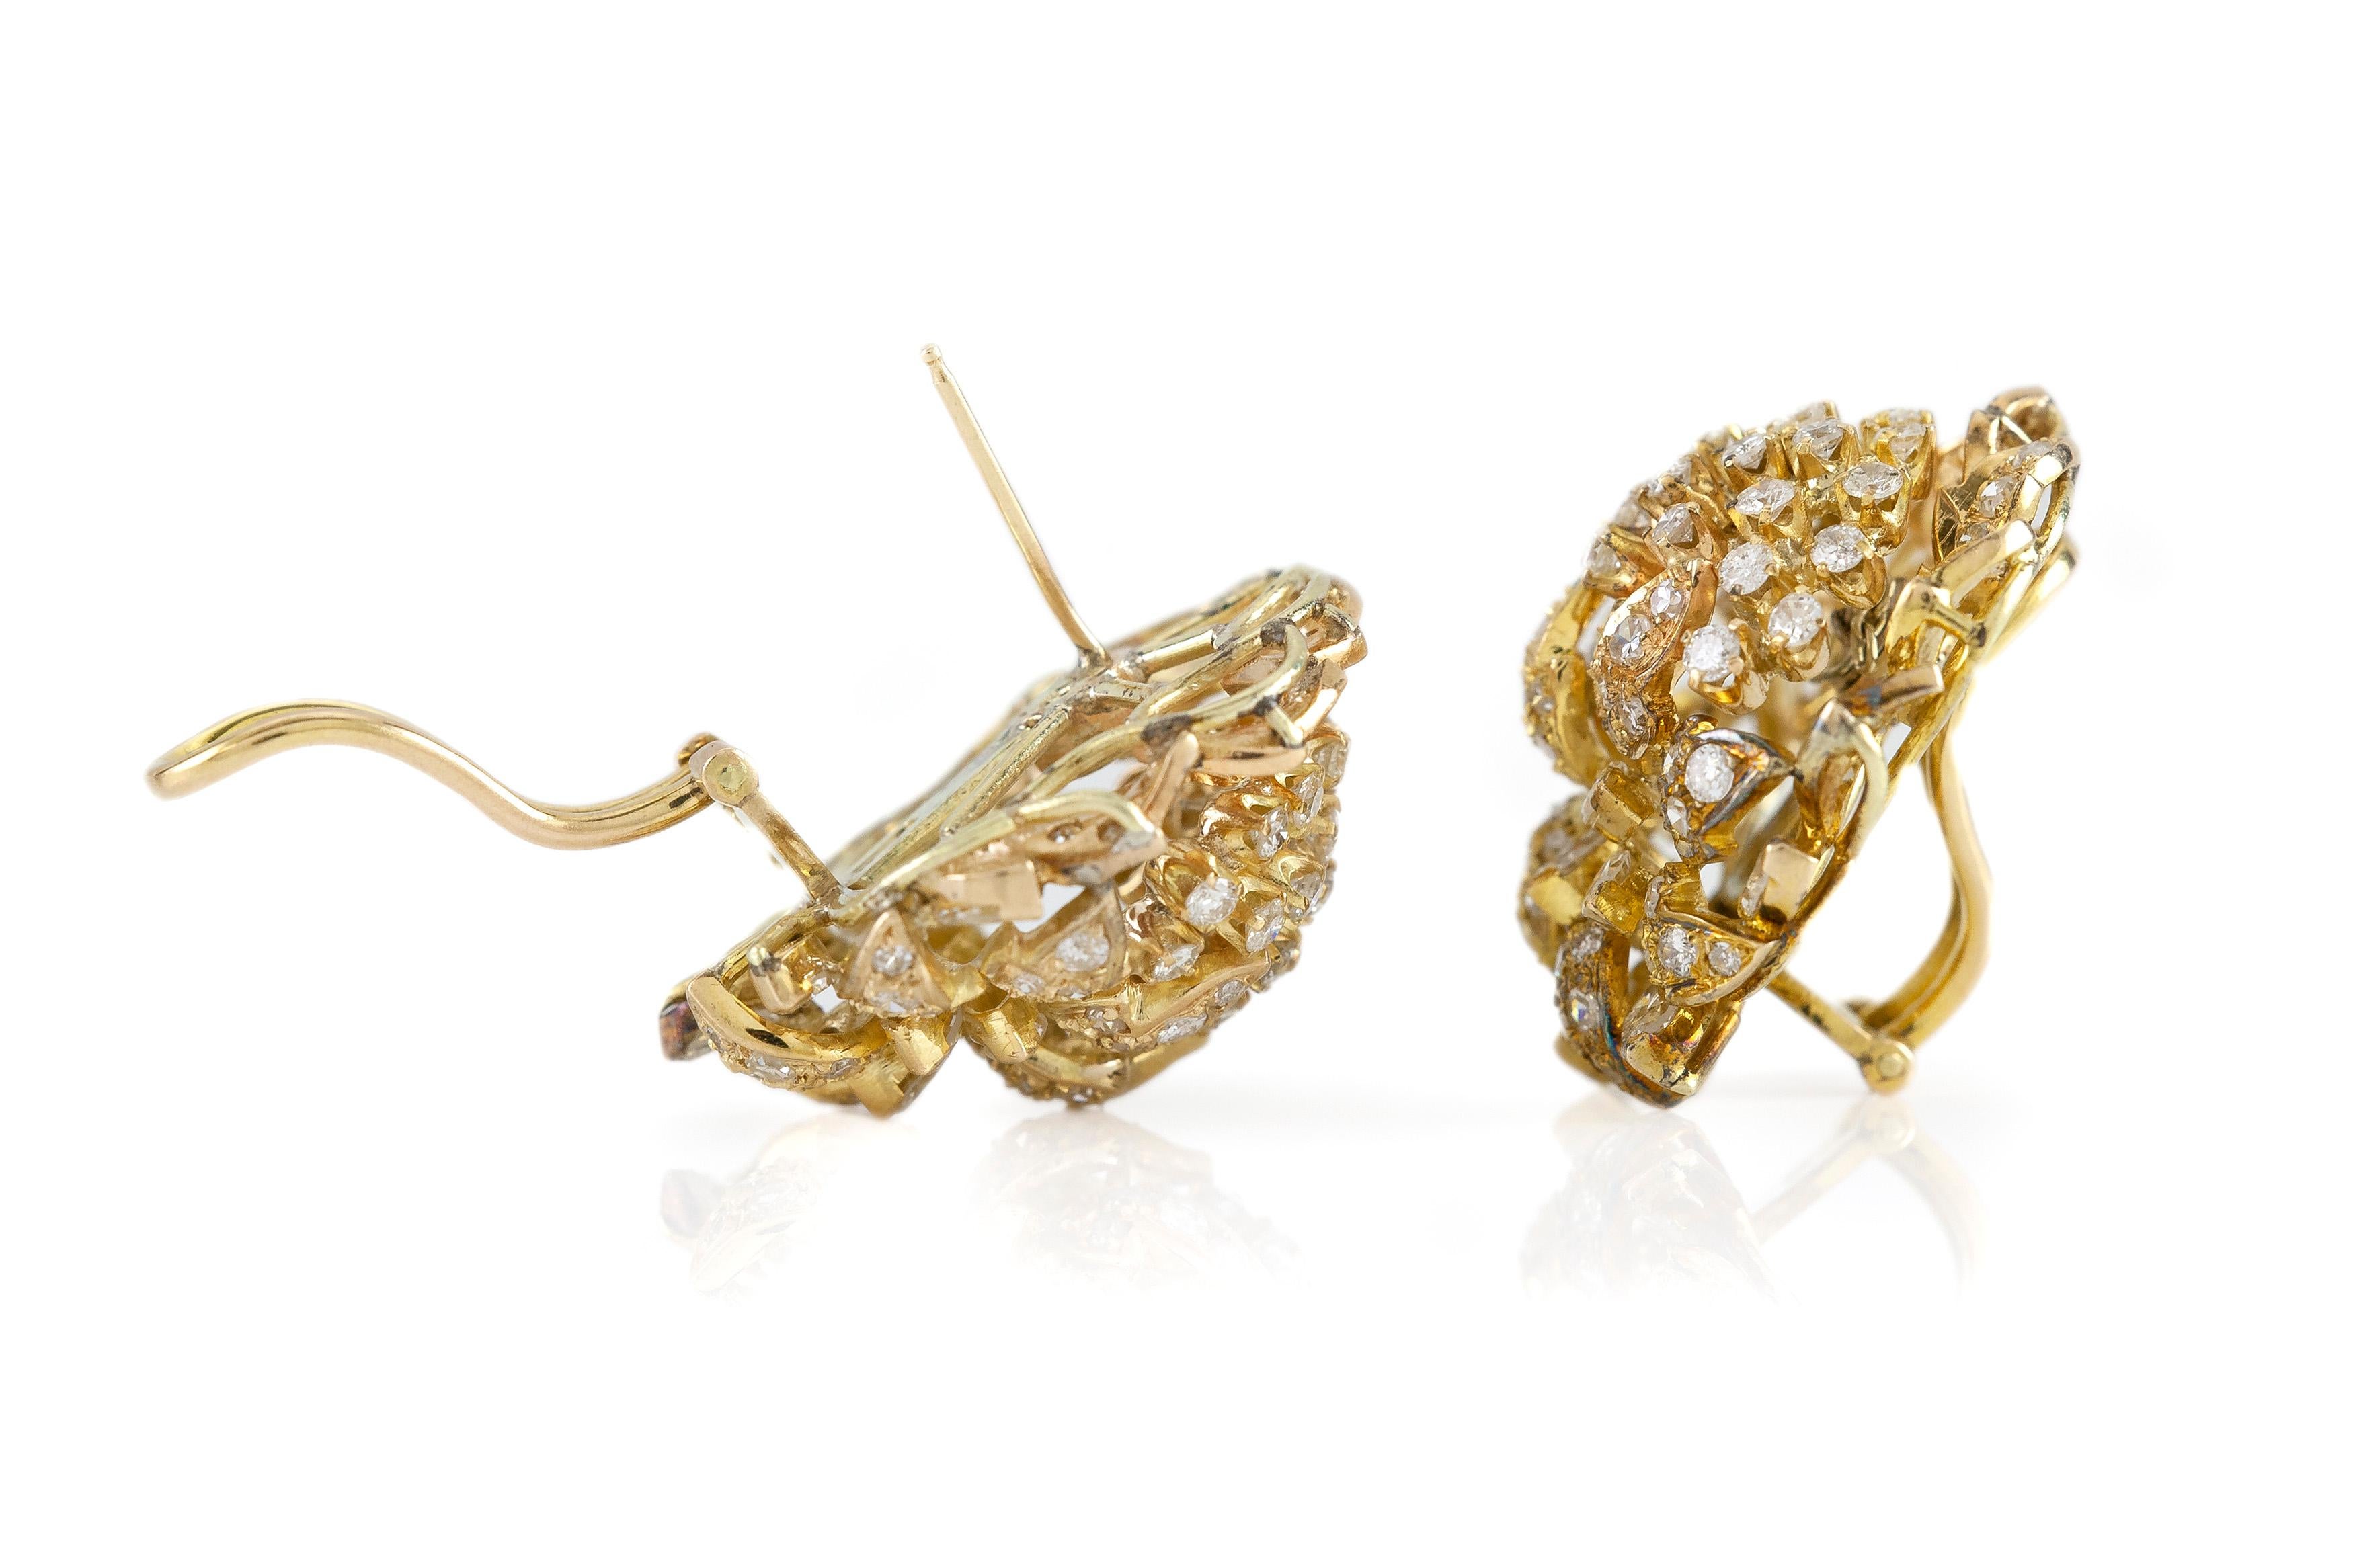 Die Ohrringe ist fein in 14k Gelbgold mit Diamanten mit einem Gesamtgewicht von etwa 5,00 Karat gefertigt.